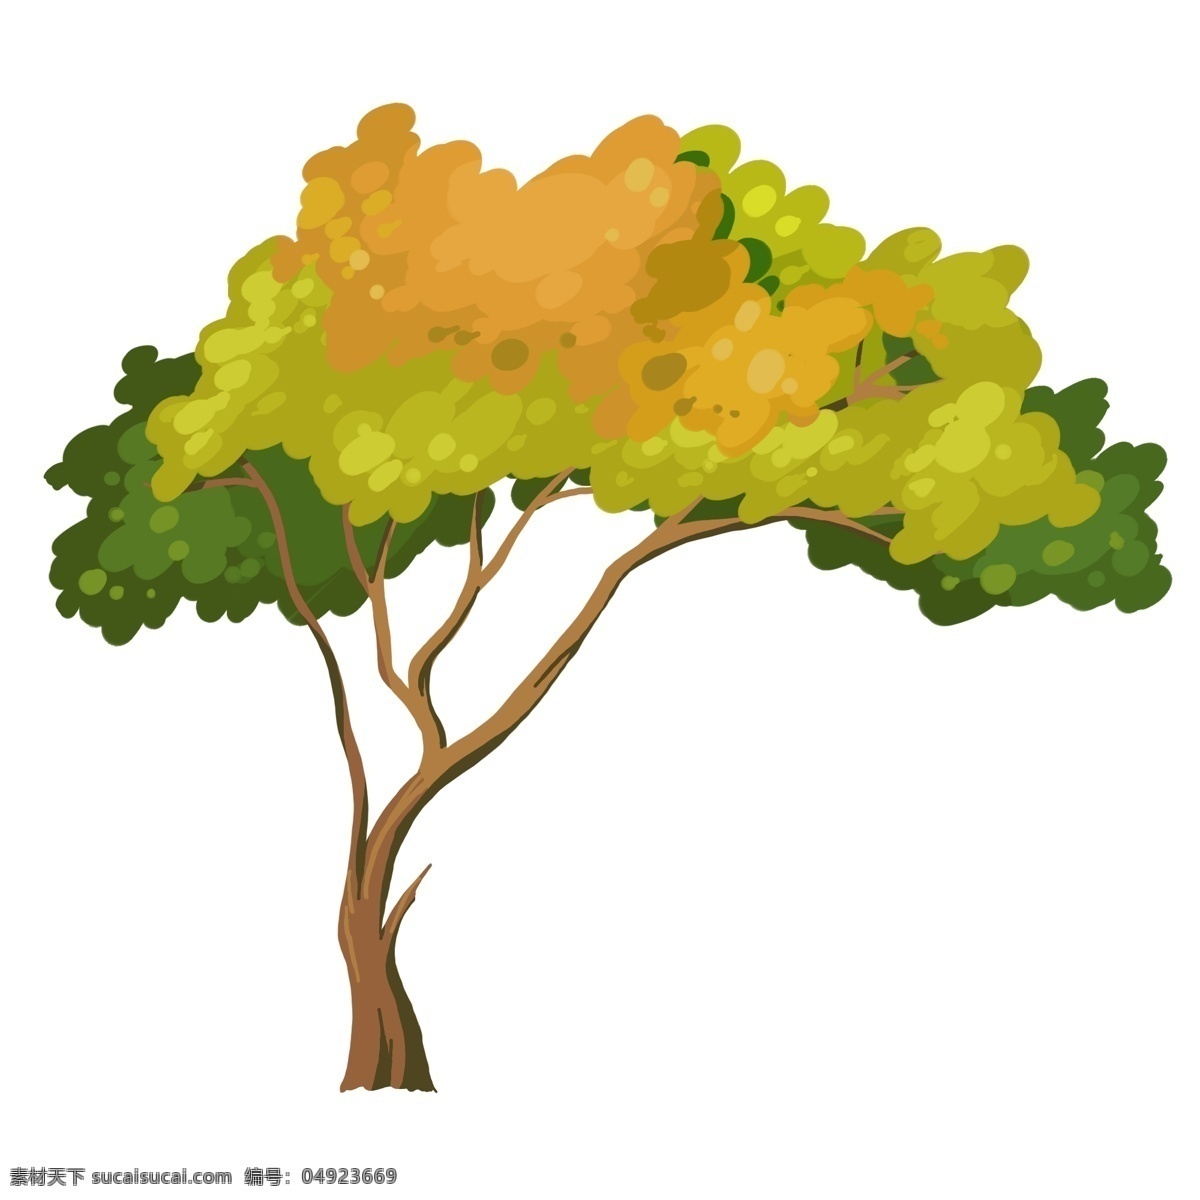 泛黄 的卡 通 大树 插画 黄色的树叶 卡通植物插画 植物 黄色树叶 泛黄的叶子 植物插画 创意植物插画